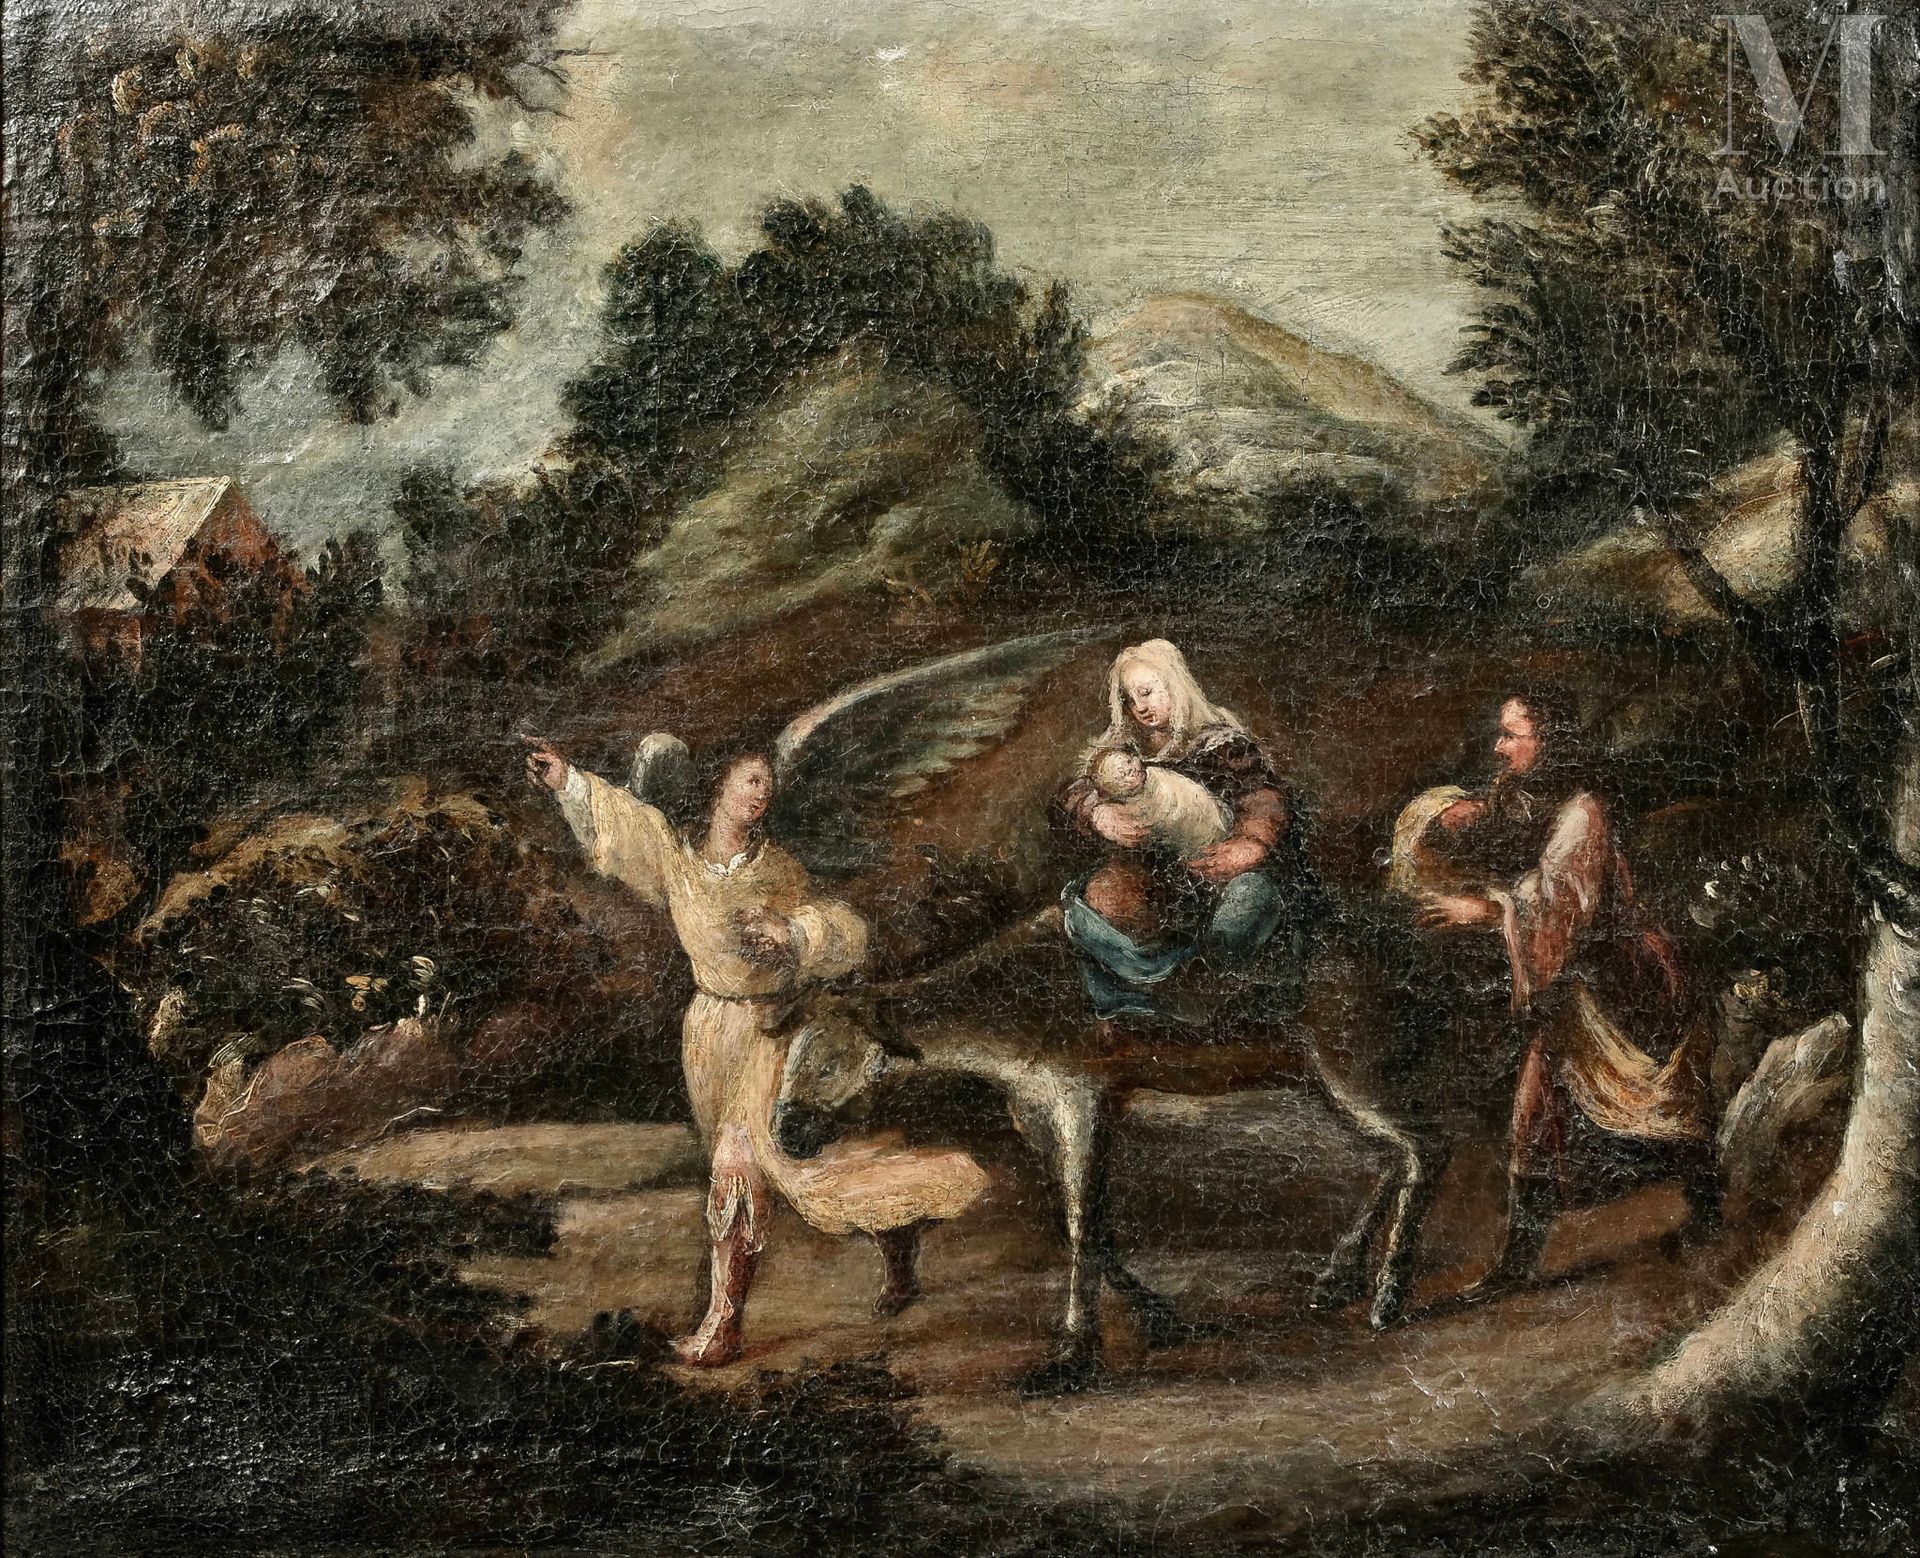 Ecole FRANCAISE du XVIIIème siècle 飞往埃及
布面油画
40 x 49,5 cm 
小事故